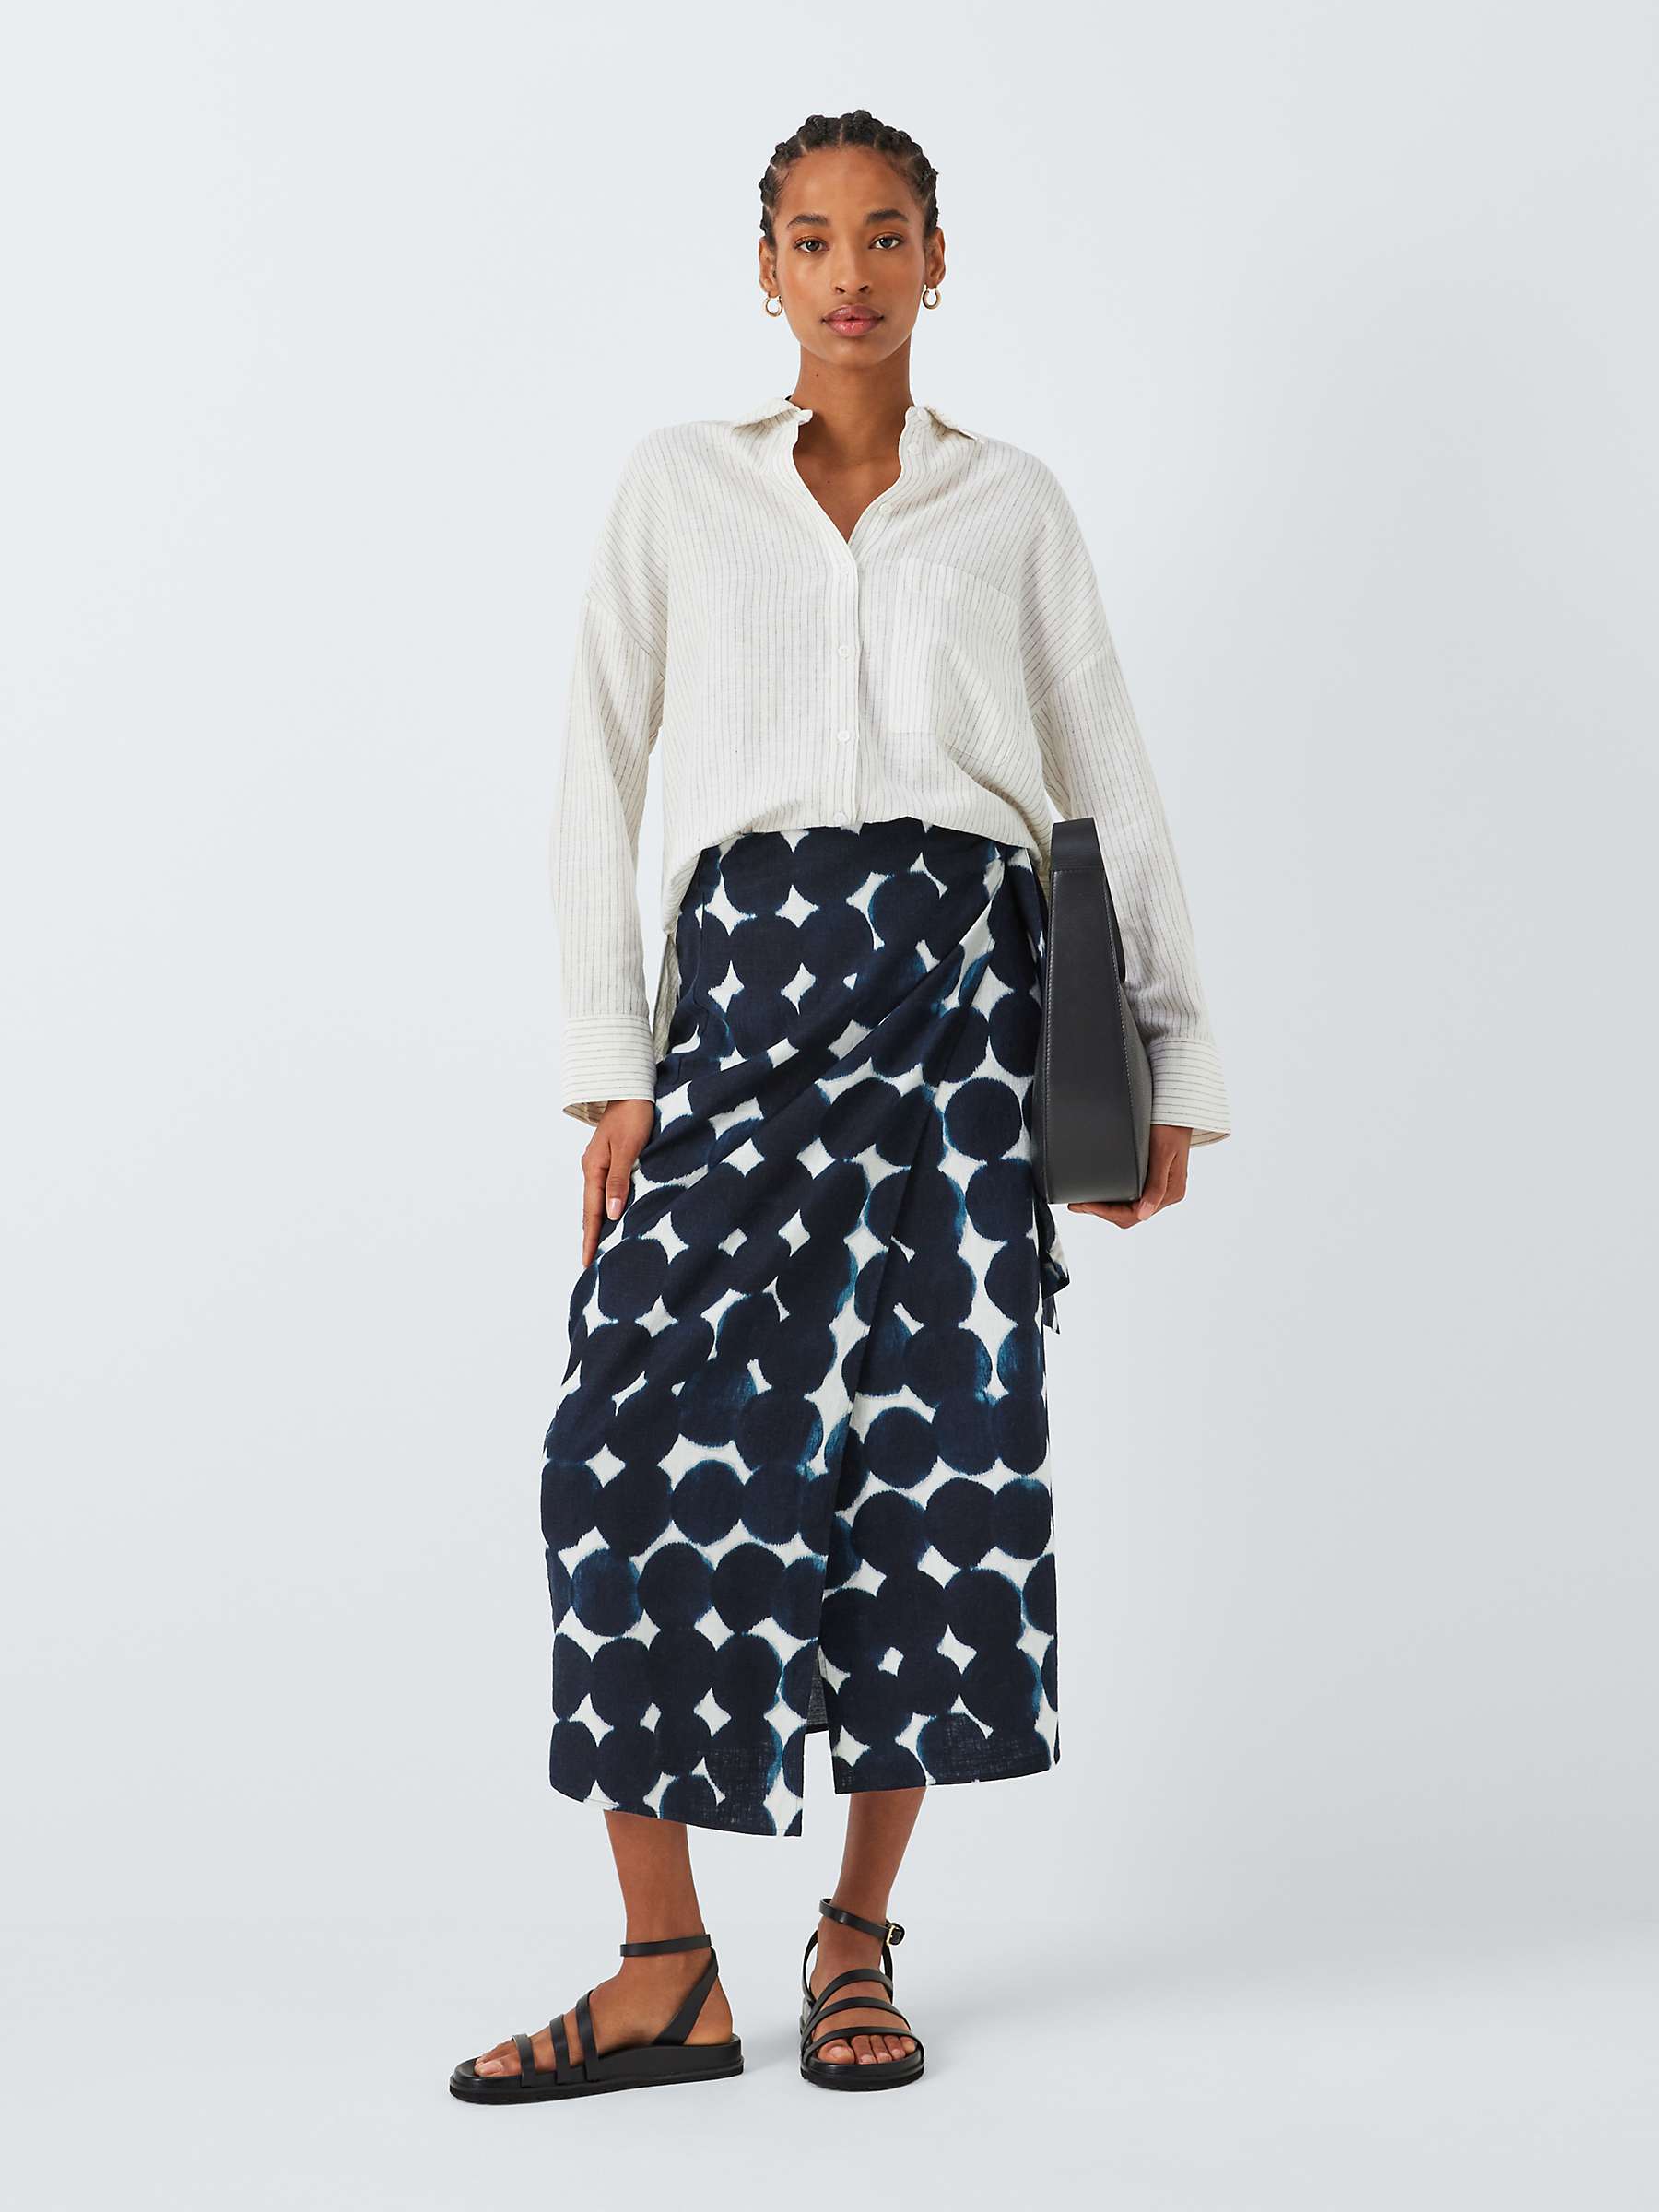 Buy John Lewis Haze Spot Print Linen Blend Skirt Online at johnlewis.com